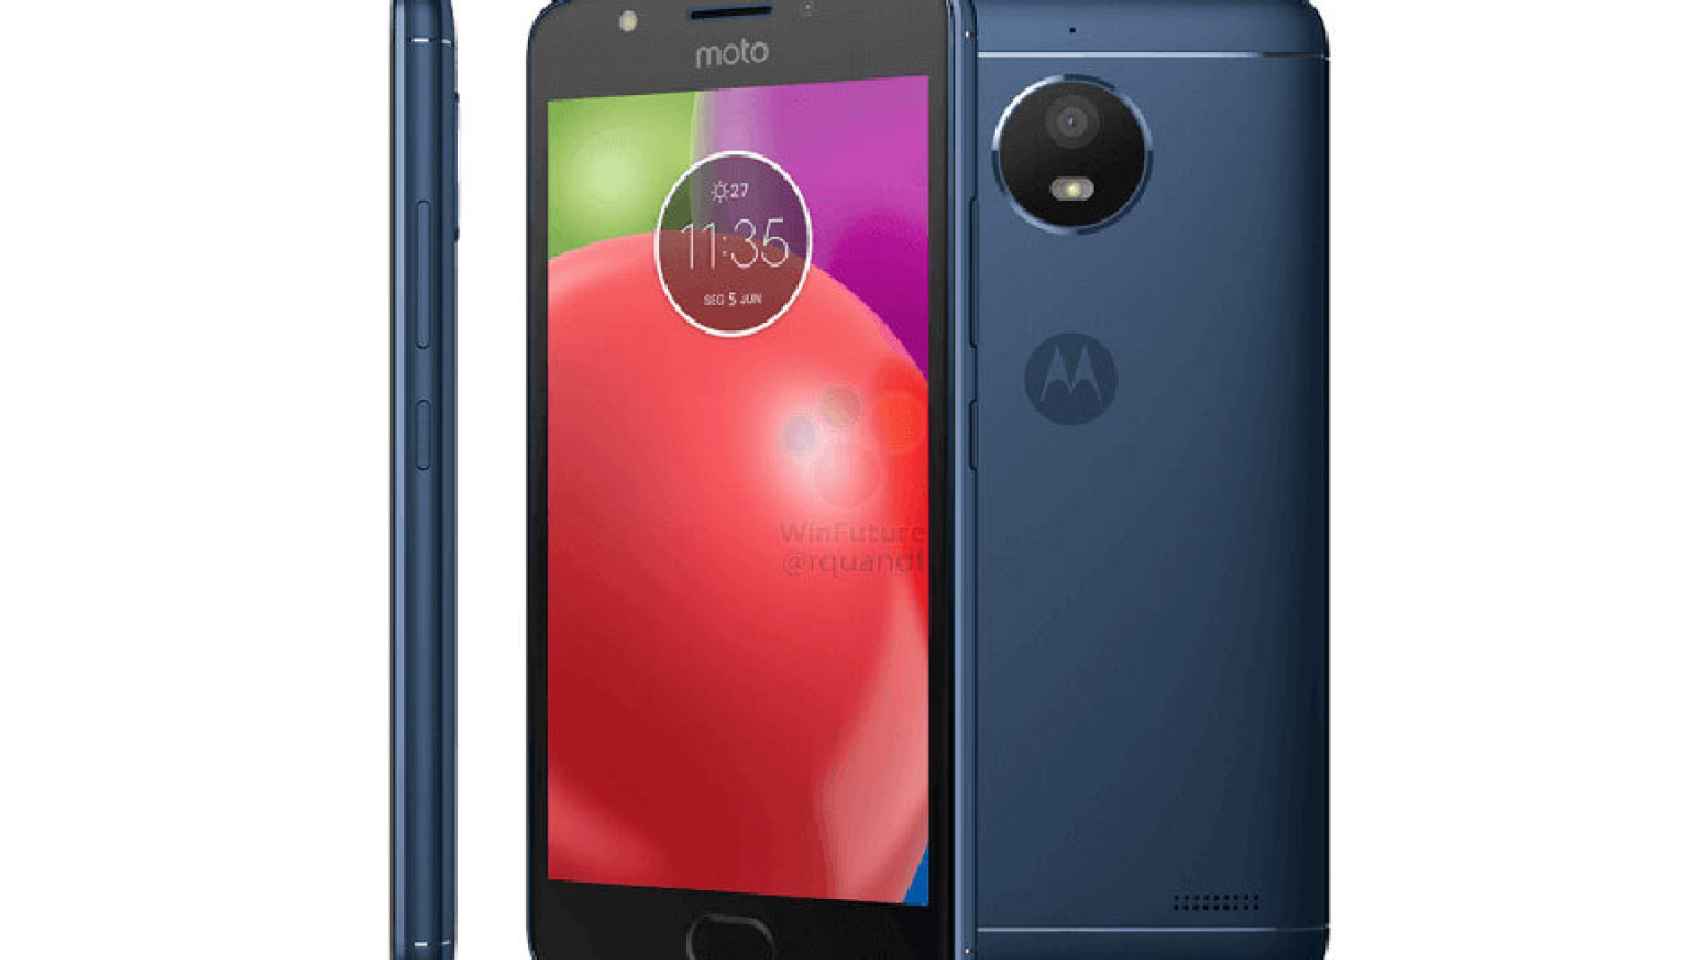 Nuevas fotos del Moto E4 muestran al móvil en varios colores